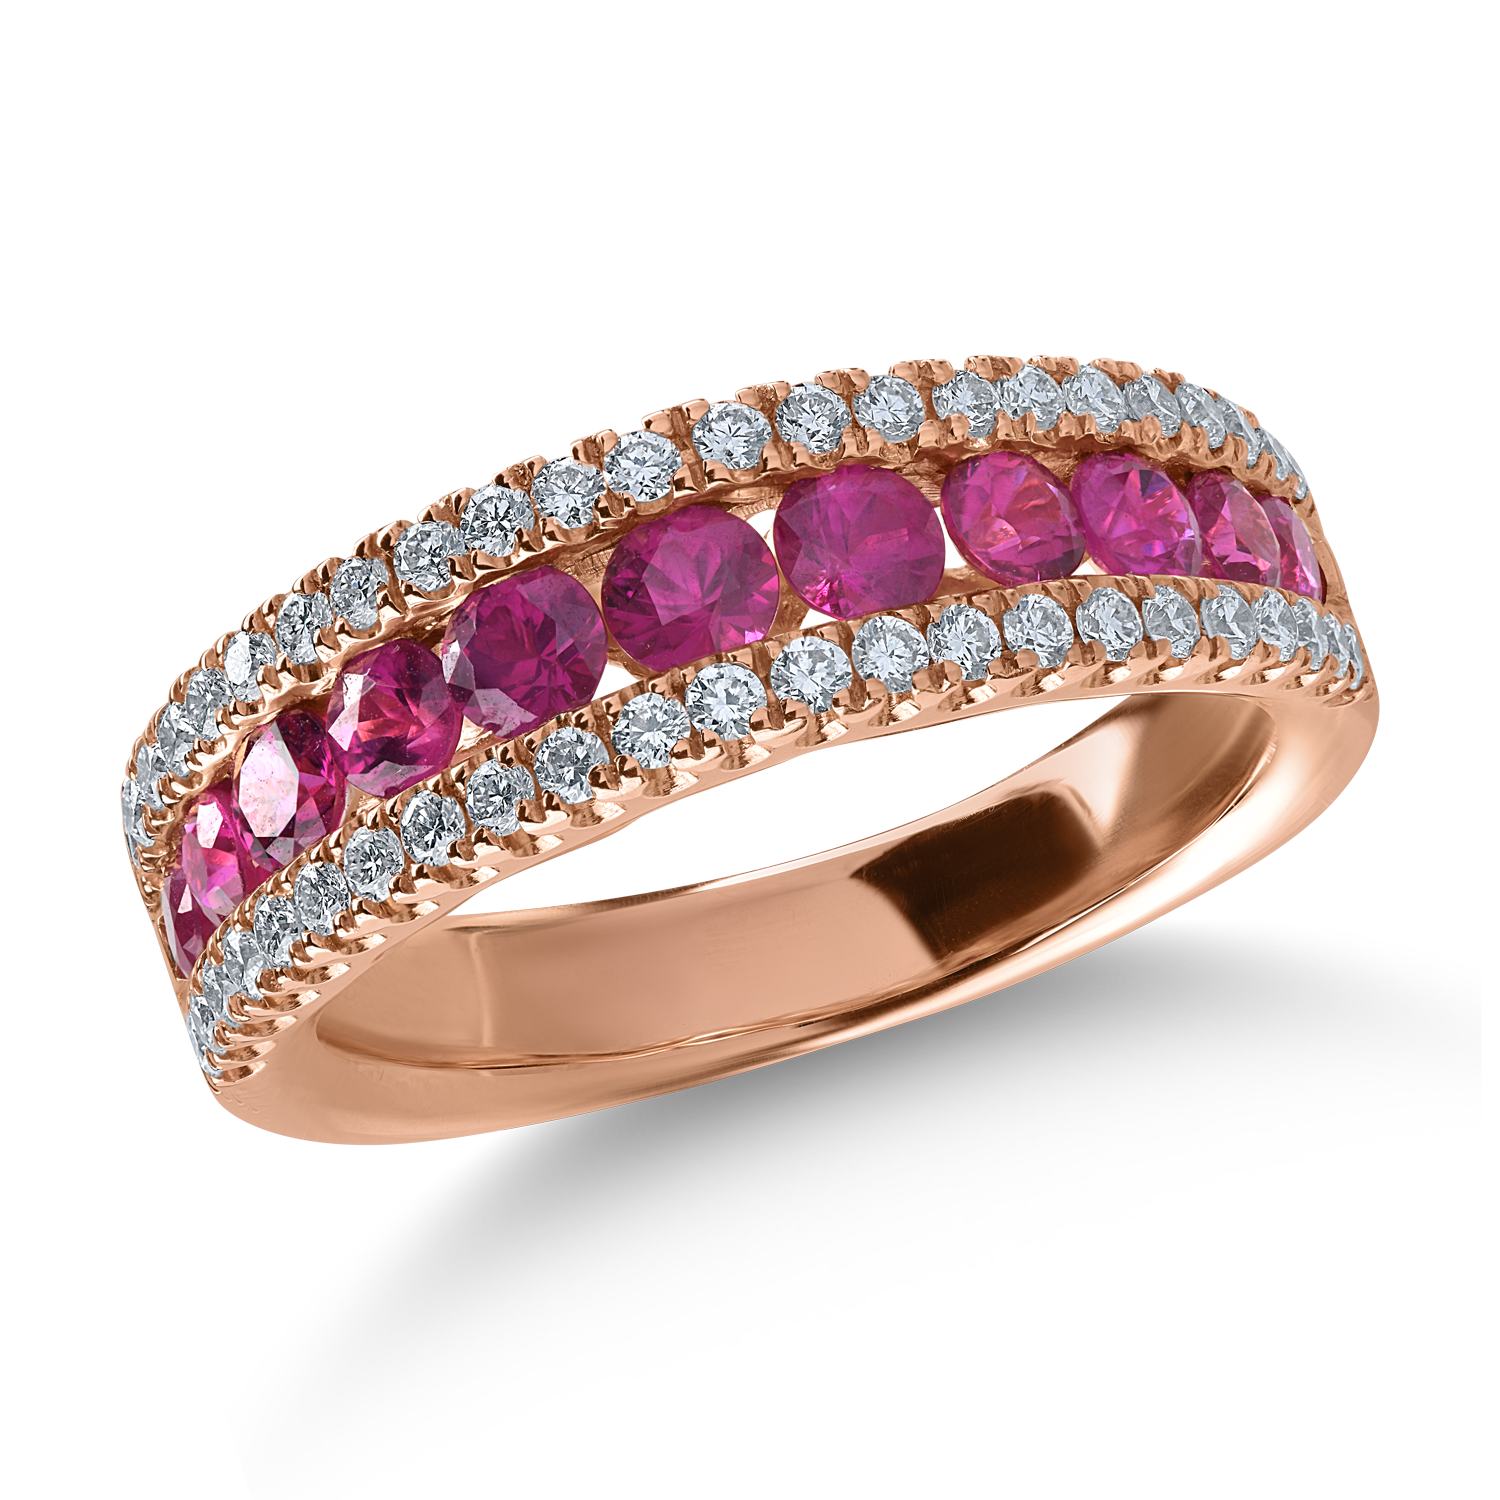 Fél örökkévalóság gyűrű rózsaszín aranyból 1.19ct rubinokkal és 0.4ct gyémántokkal